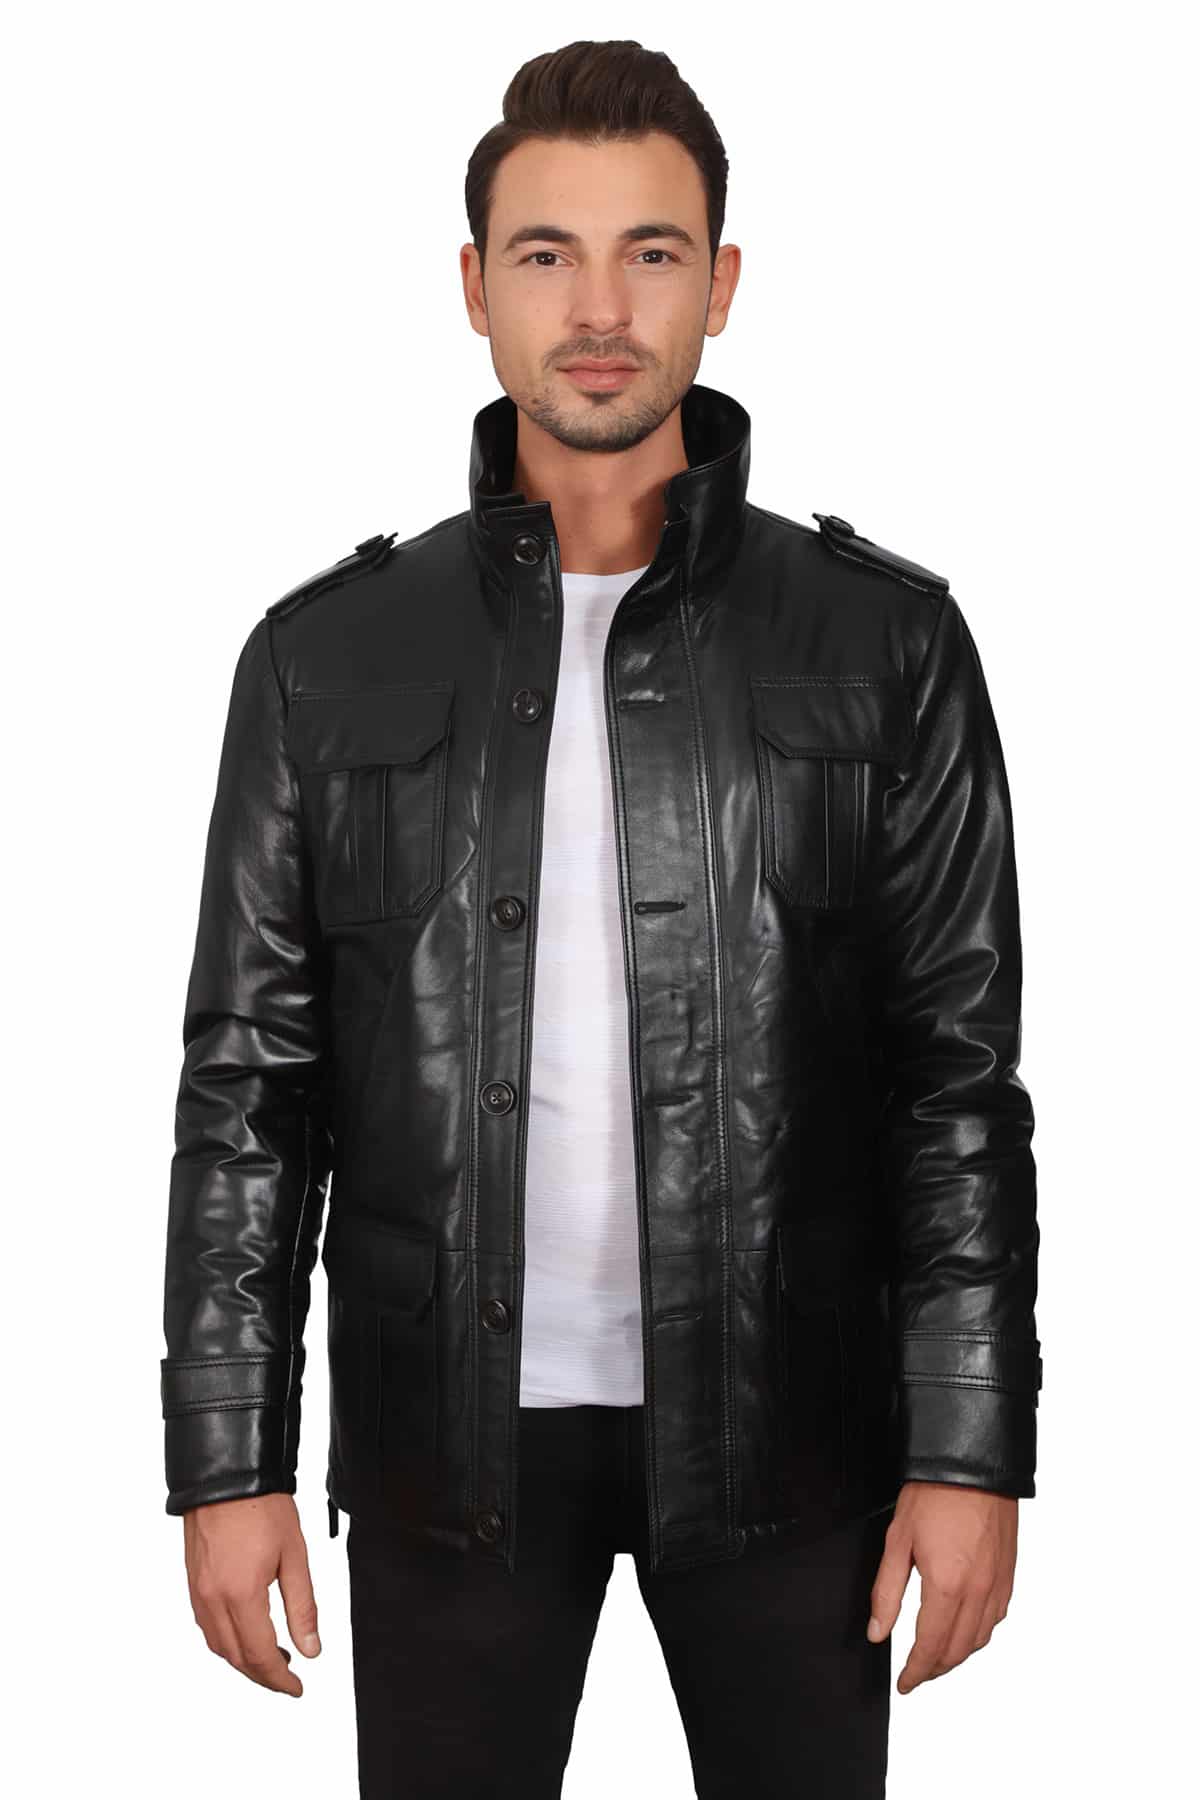 Men's 100 % Real Black Leather Safar Charismatic Jacket